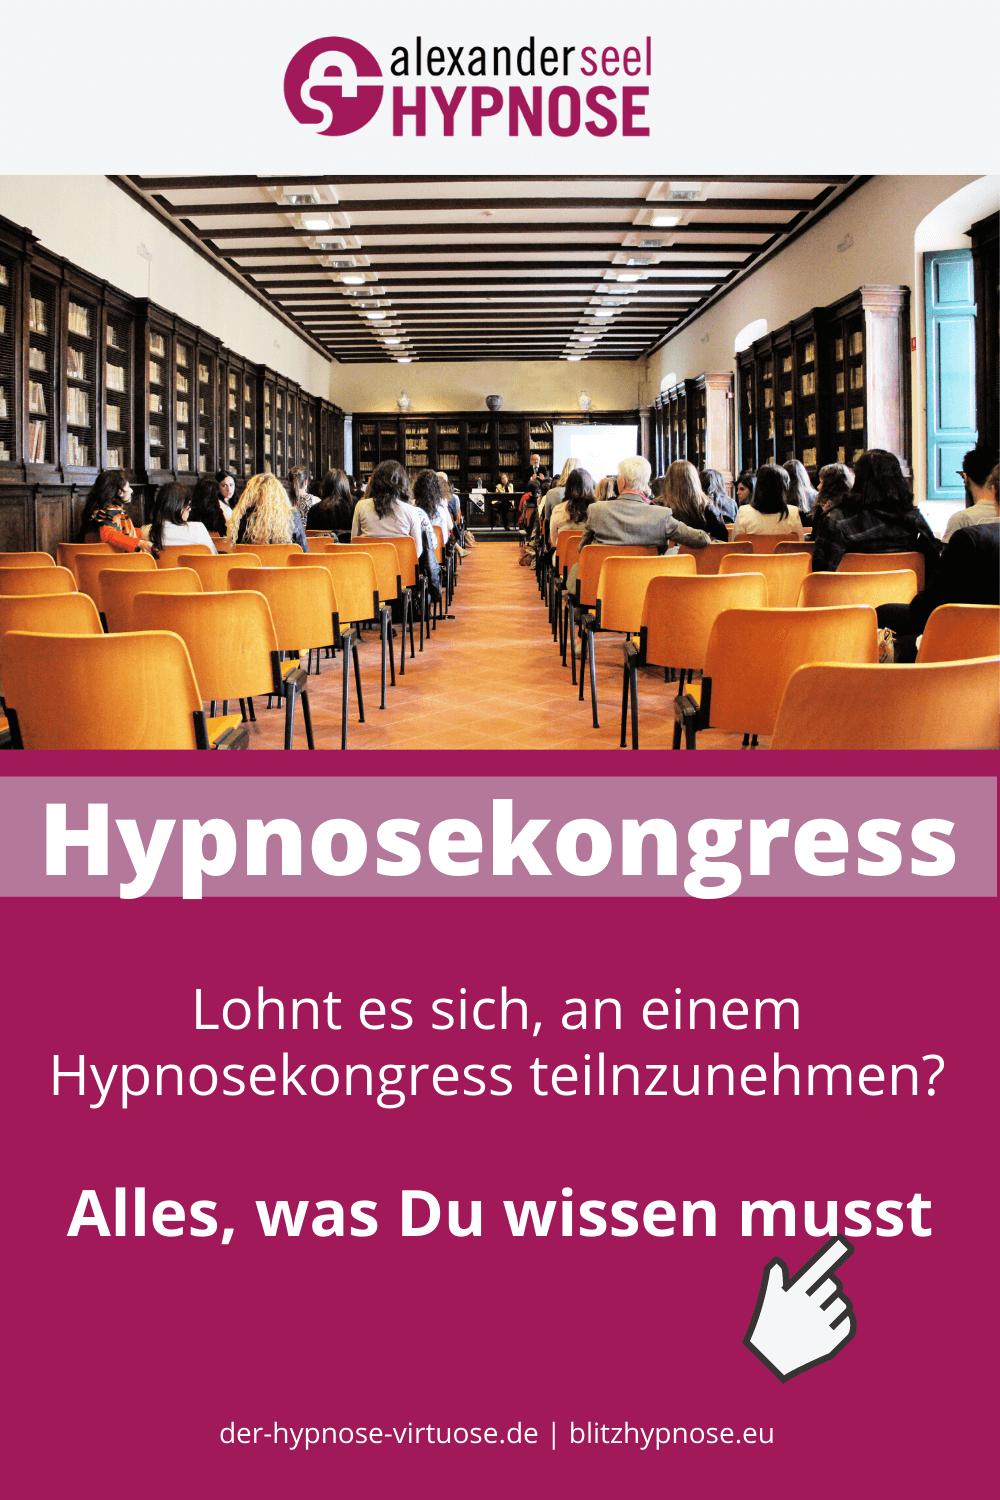 Hypnosekongress - Lohnt sich die Teilnahme an einer Hypnosekonferenz?